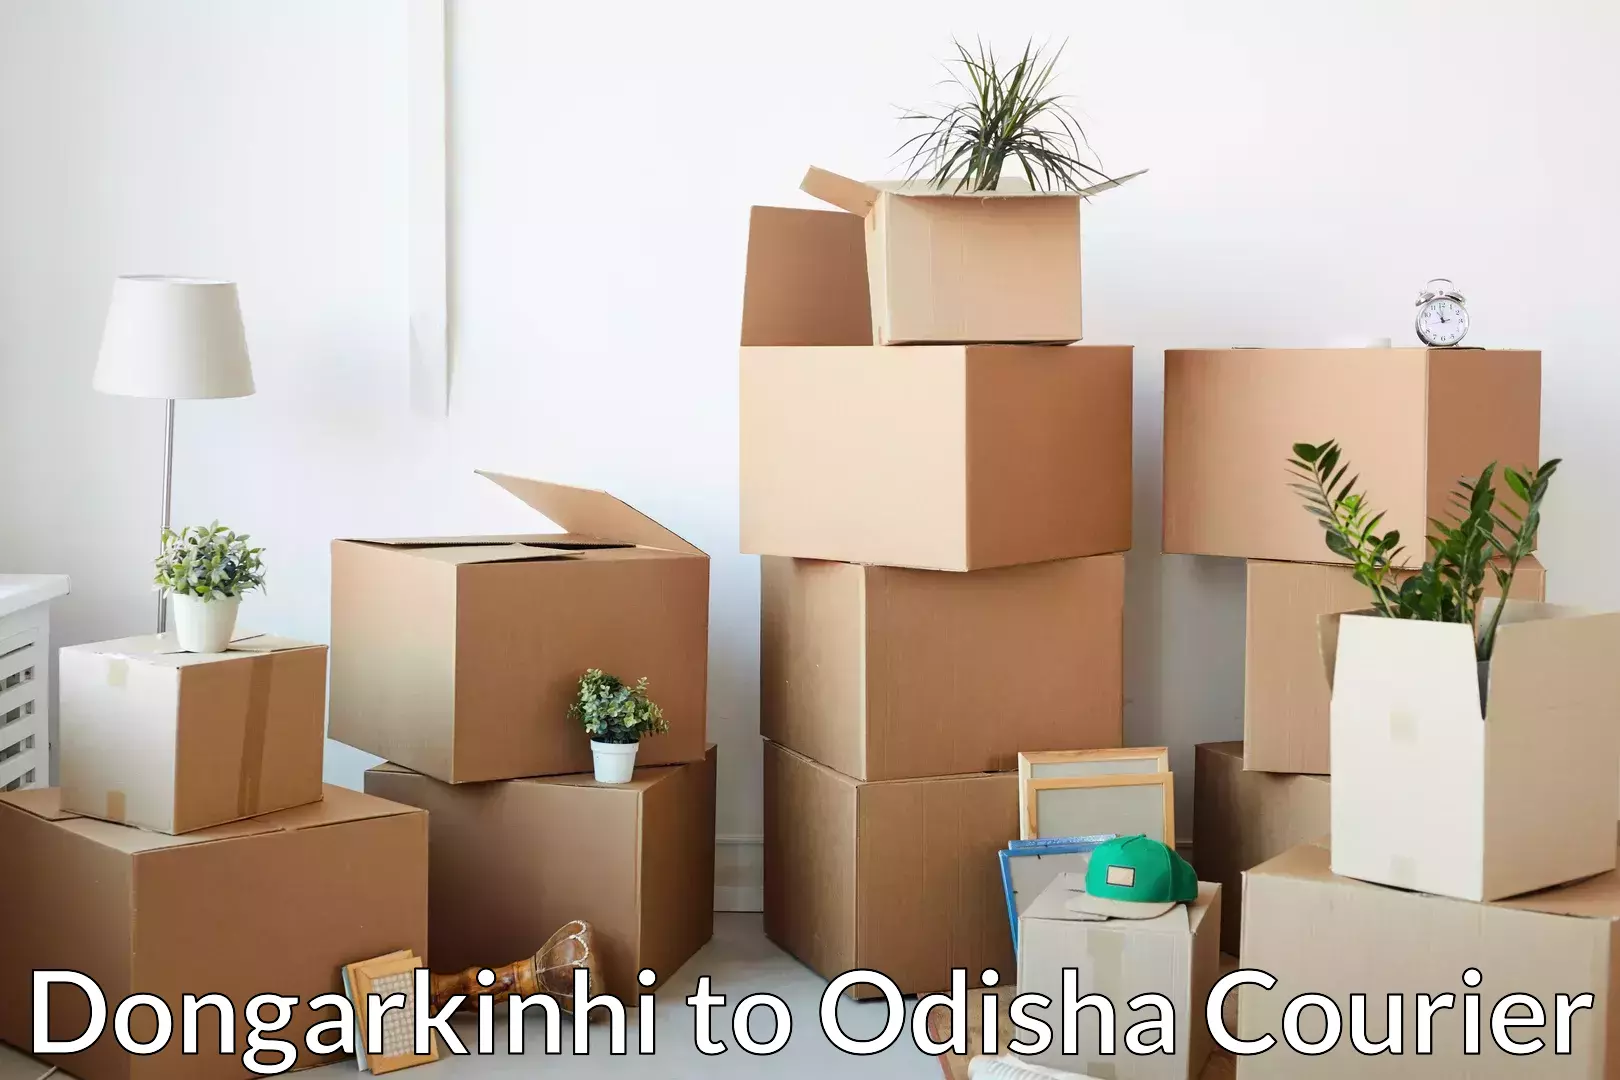 Furniture moving experts Dongarkinhi to Tihidi